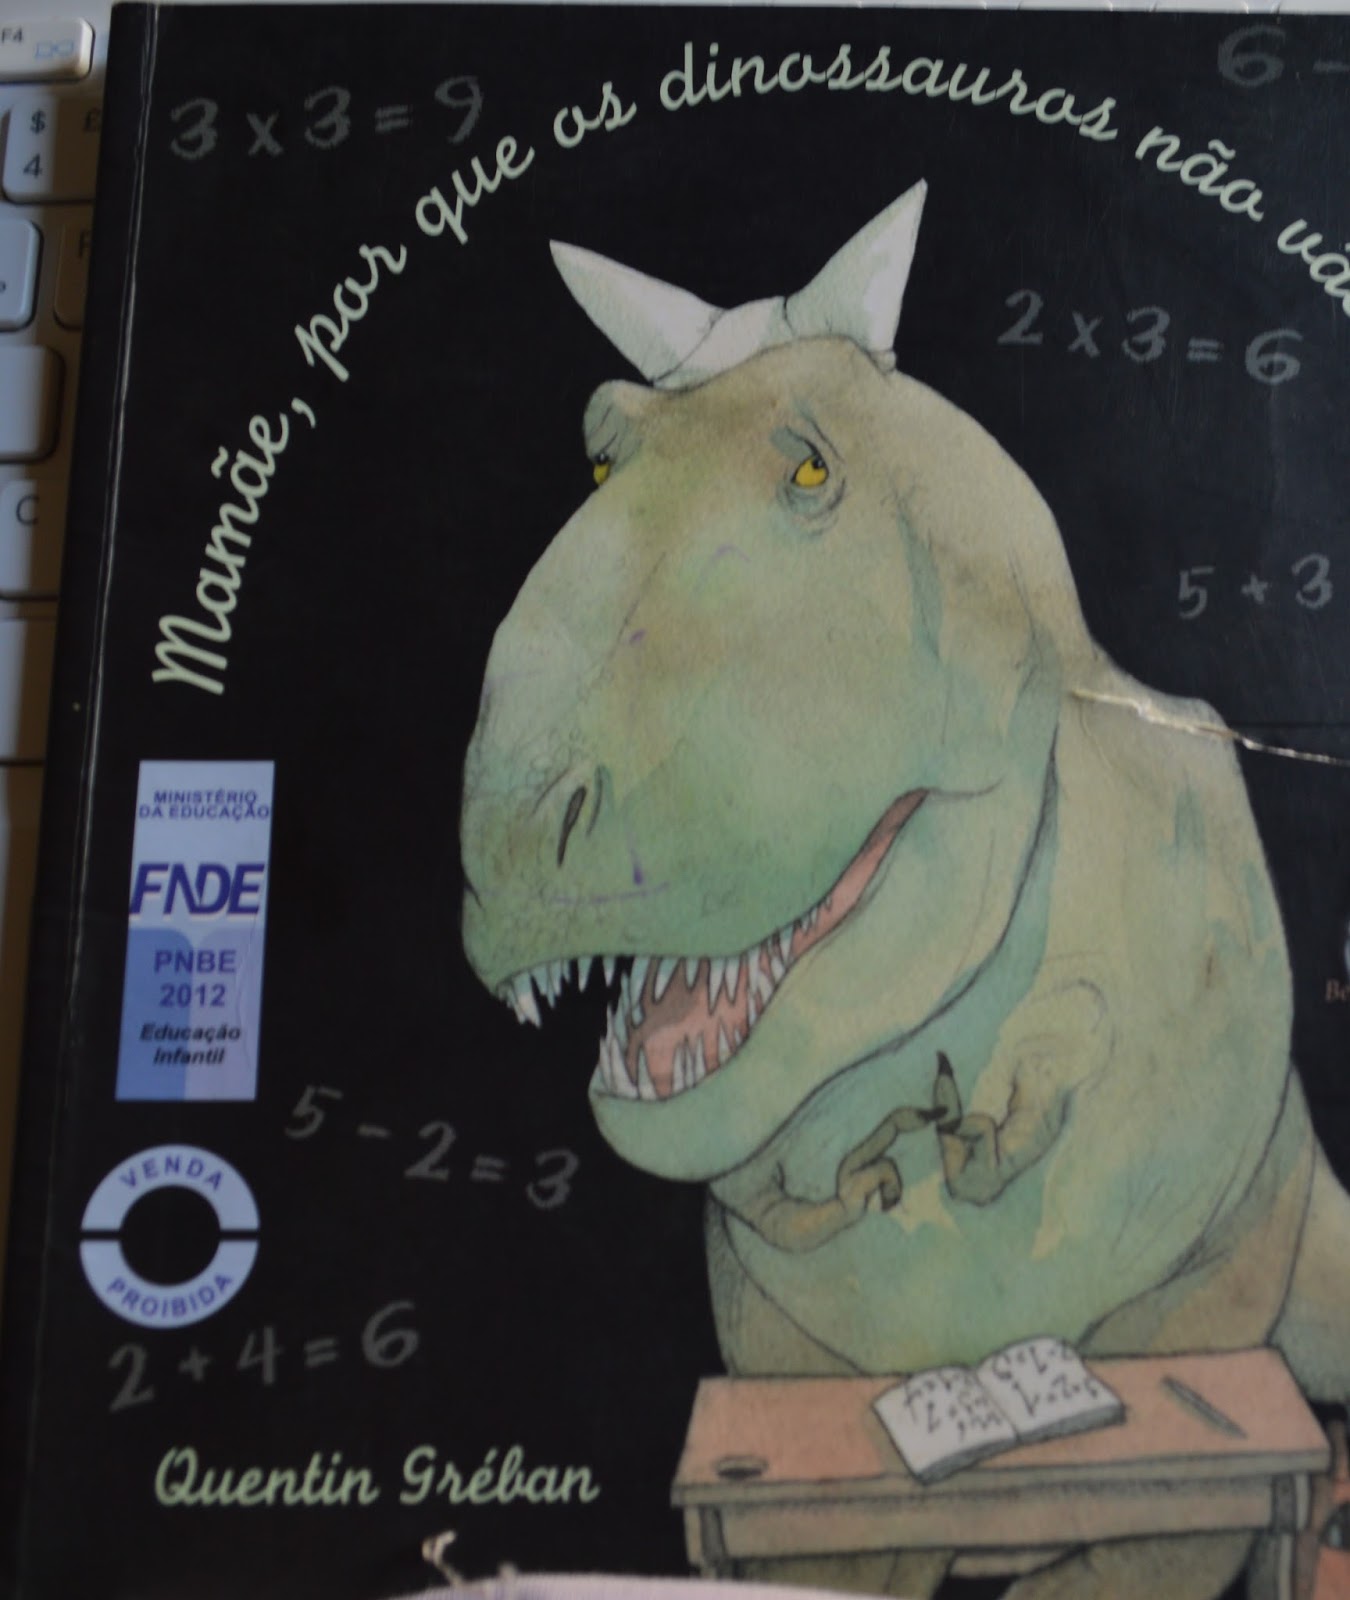 História Mamãe, por que os dinossauros não vão à escola? 